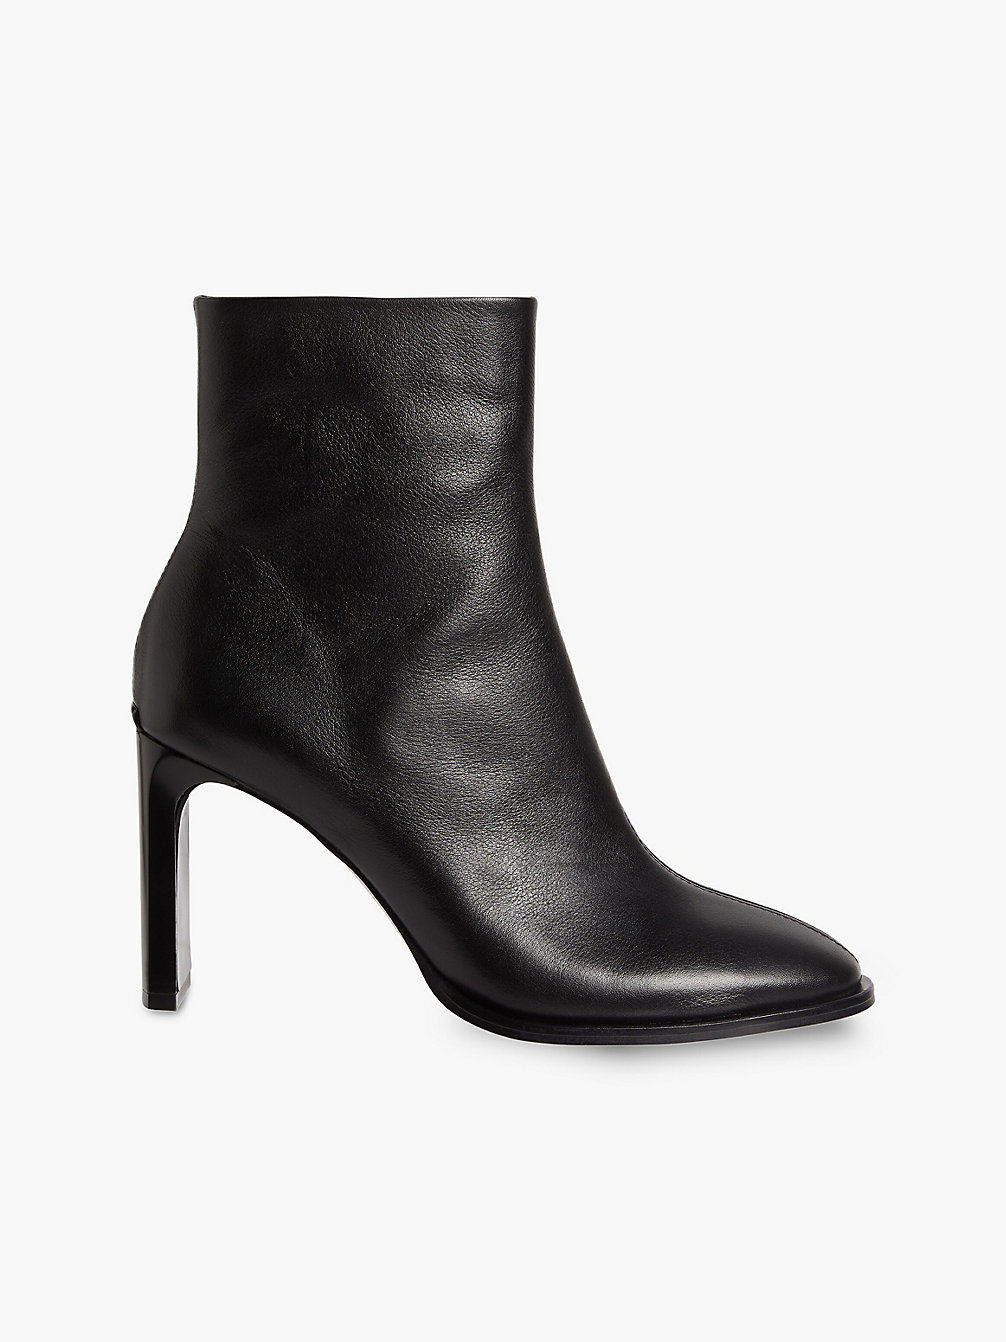 CK BLACK > Ankle-Boots Mit Absatz Aus Leder > undefined Damen - Calvin Klein